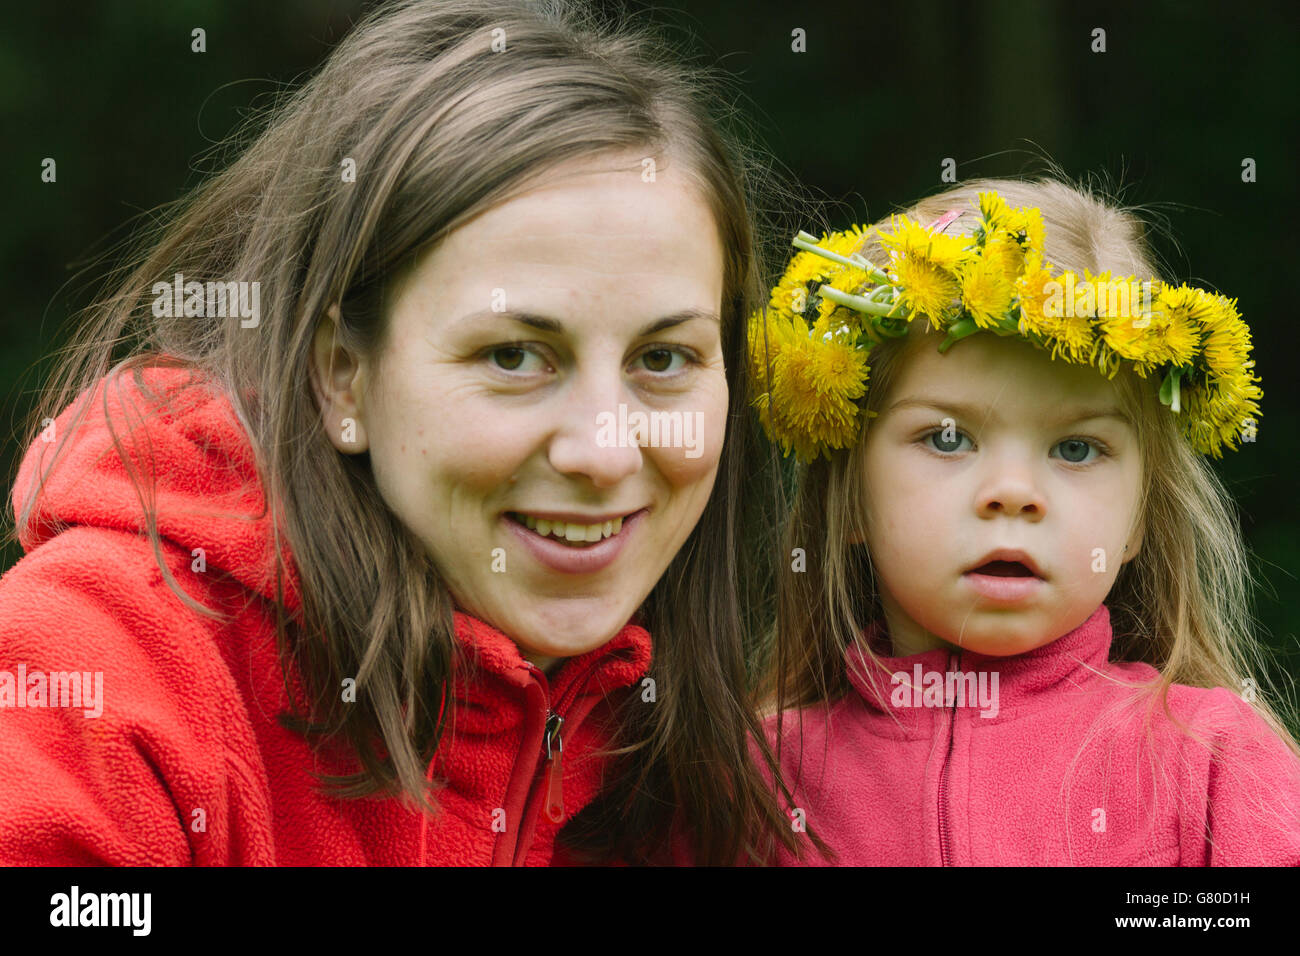 Photographu cerca de una joven madre y su hija en medio de la naturaleza, portando guirnalda de flores Foto de stock